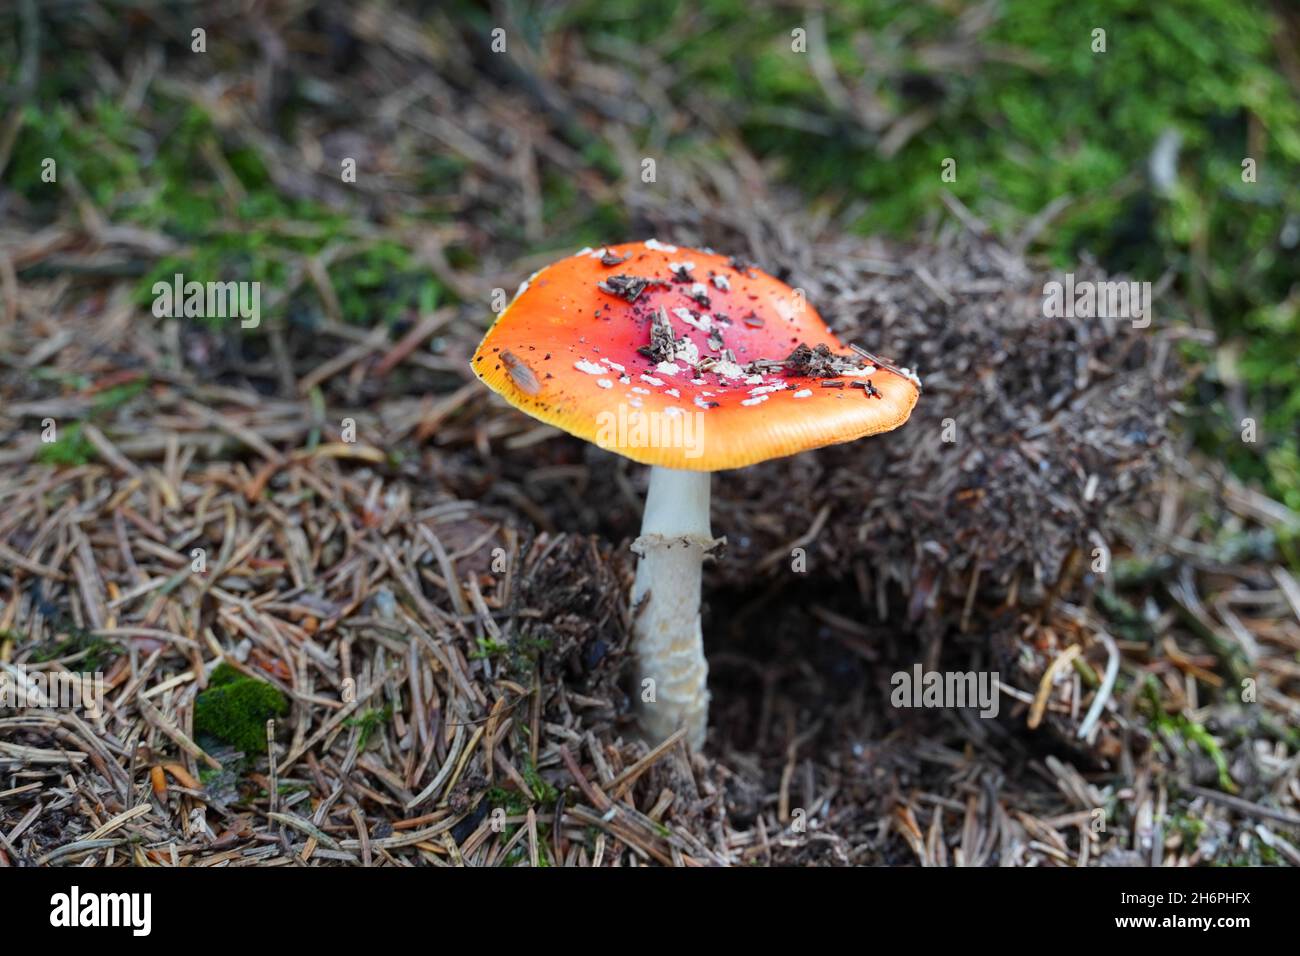 Frische Fliegengitarre auf Waldboden. Roter Pilz mit weißen Flecken. Giftig. Amanita muscaria. Stockfoto